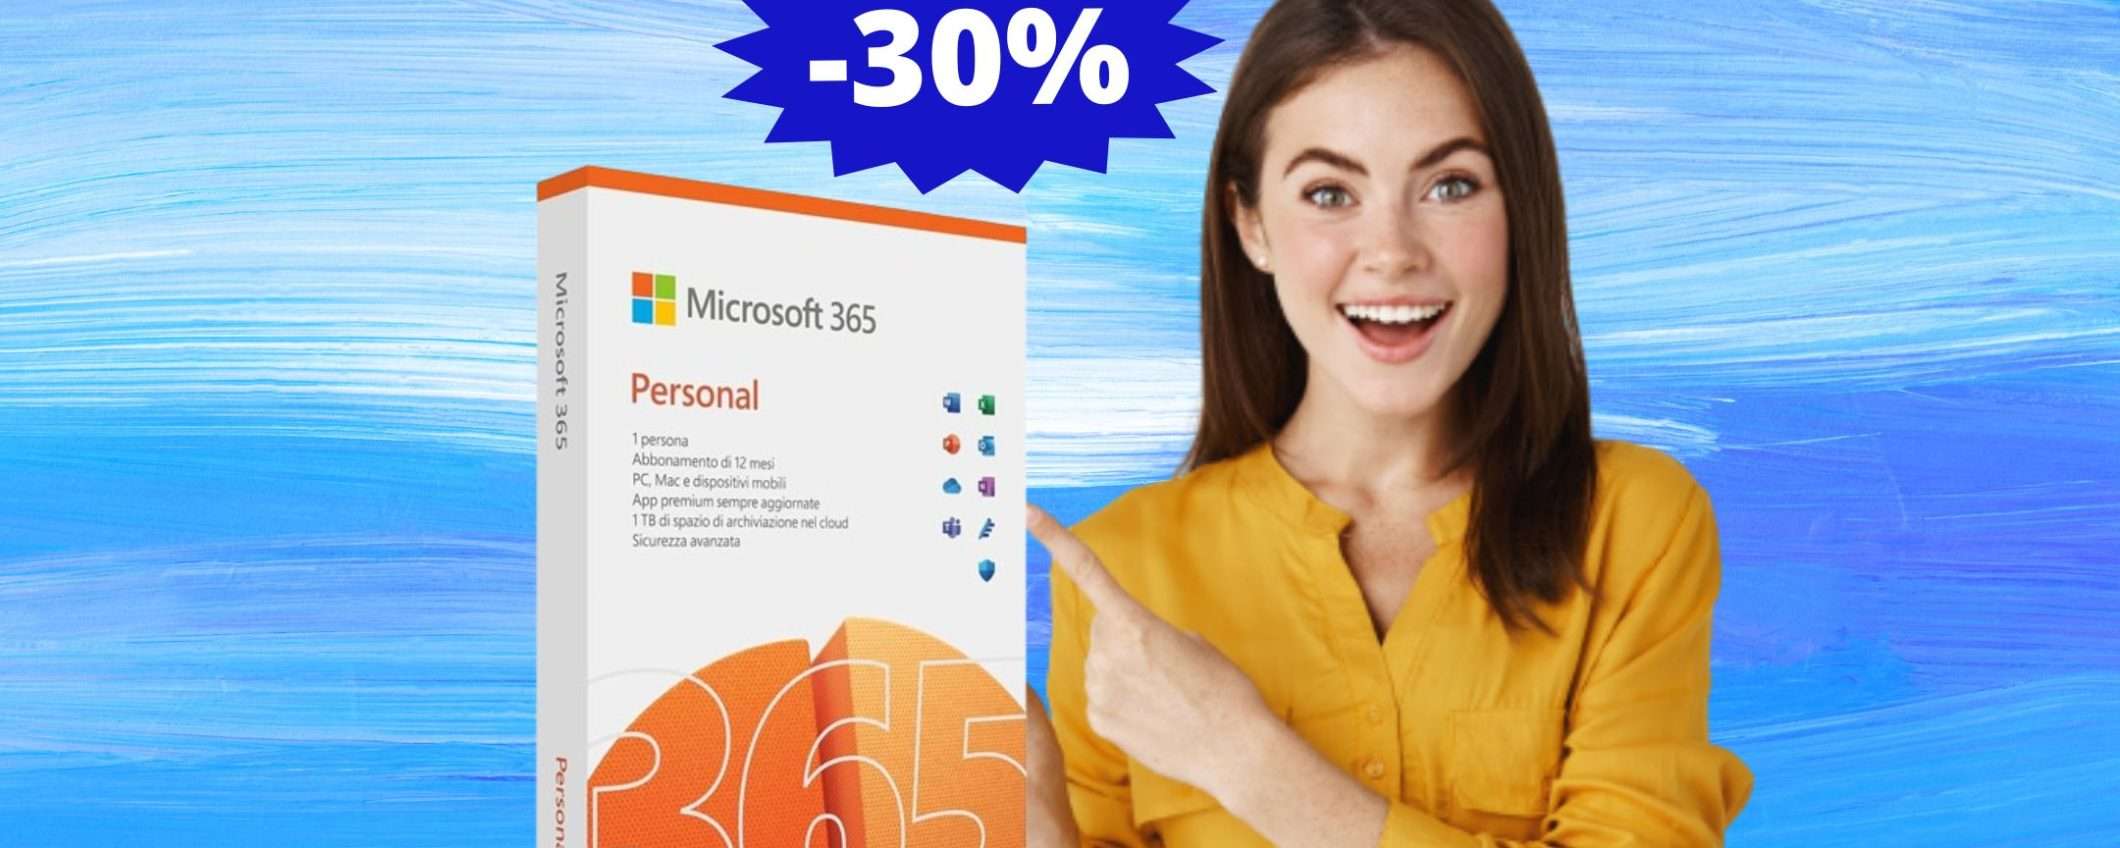 Microsoft 365 Personal: sconto IMPERDIBILE del 30% su Amazon